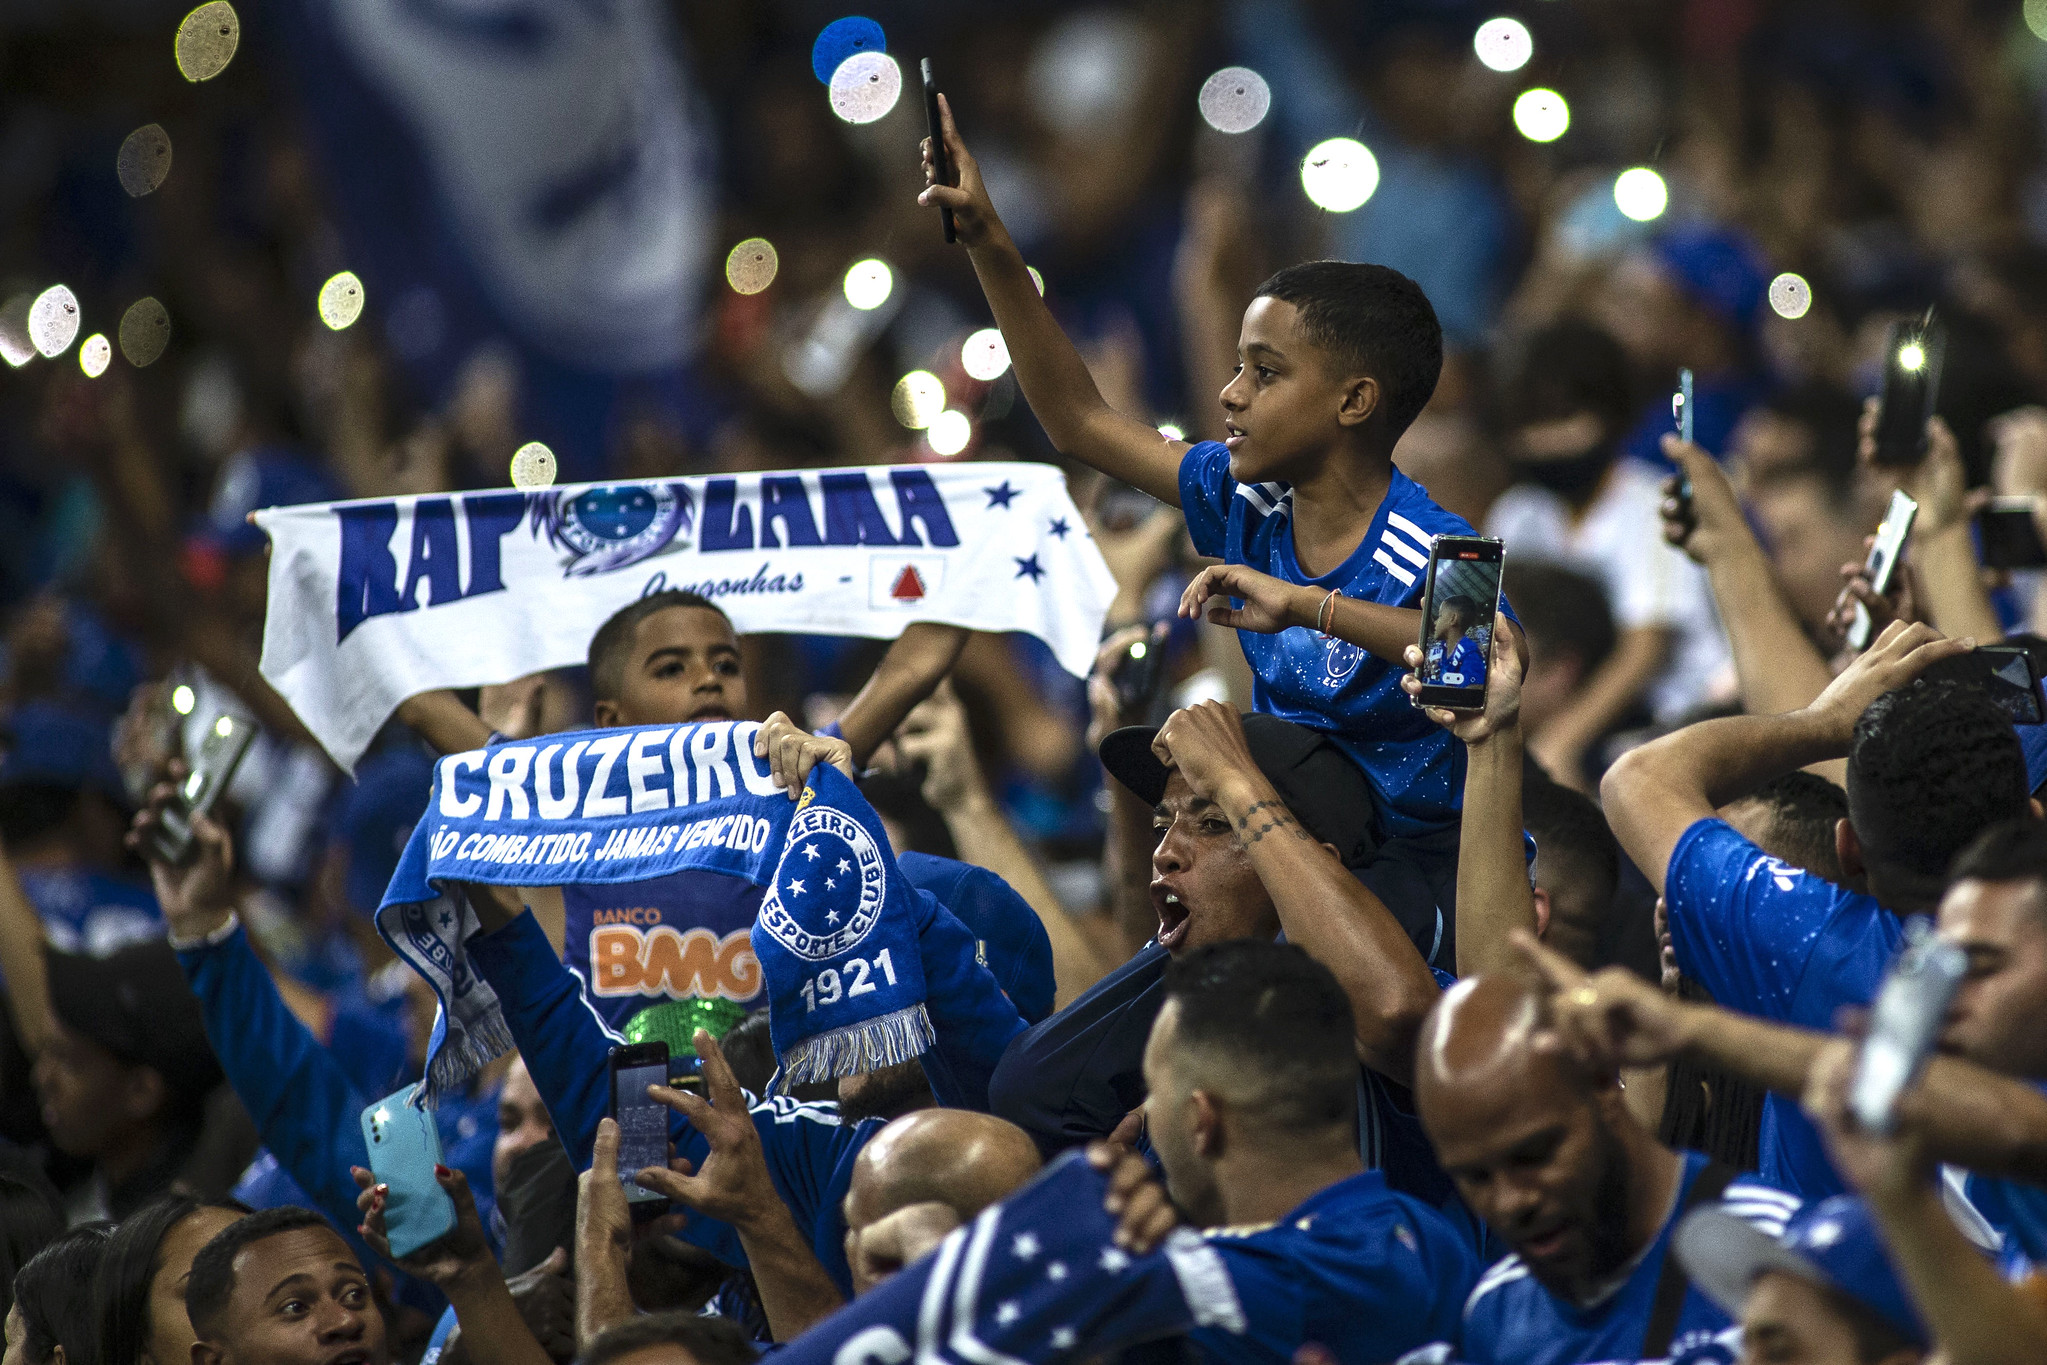 Próximos Jogos do Cruzeiro 2022  Jogo de Hoje Cruzeiro pela série B 